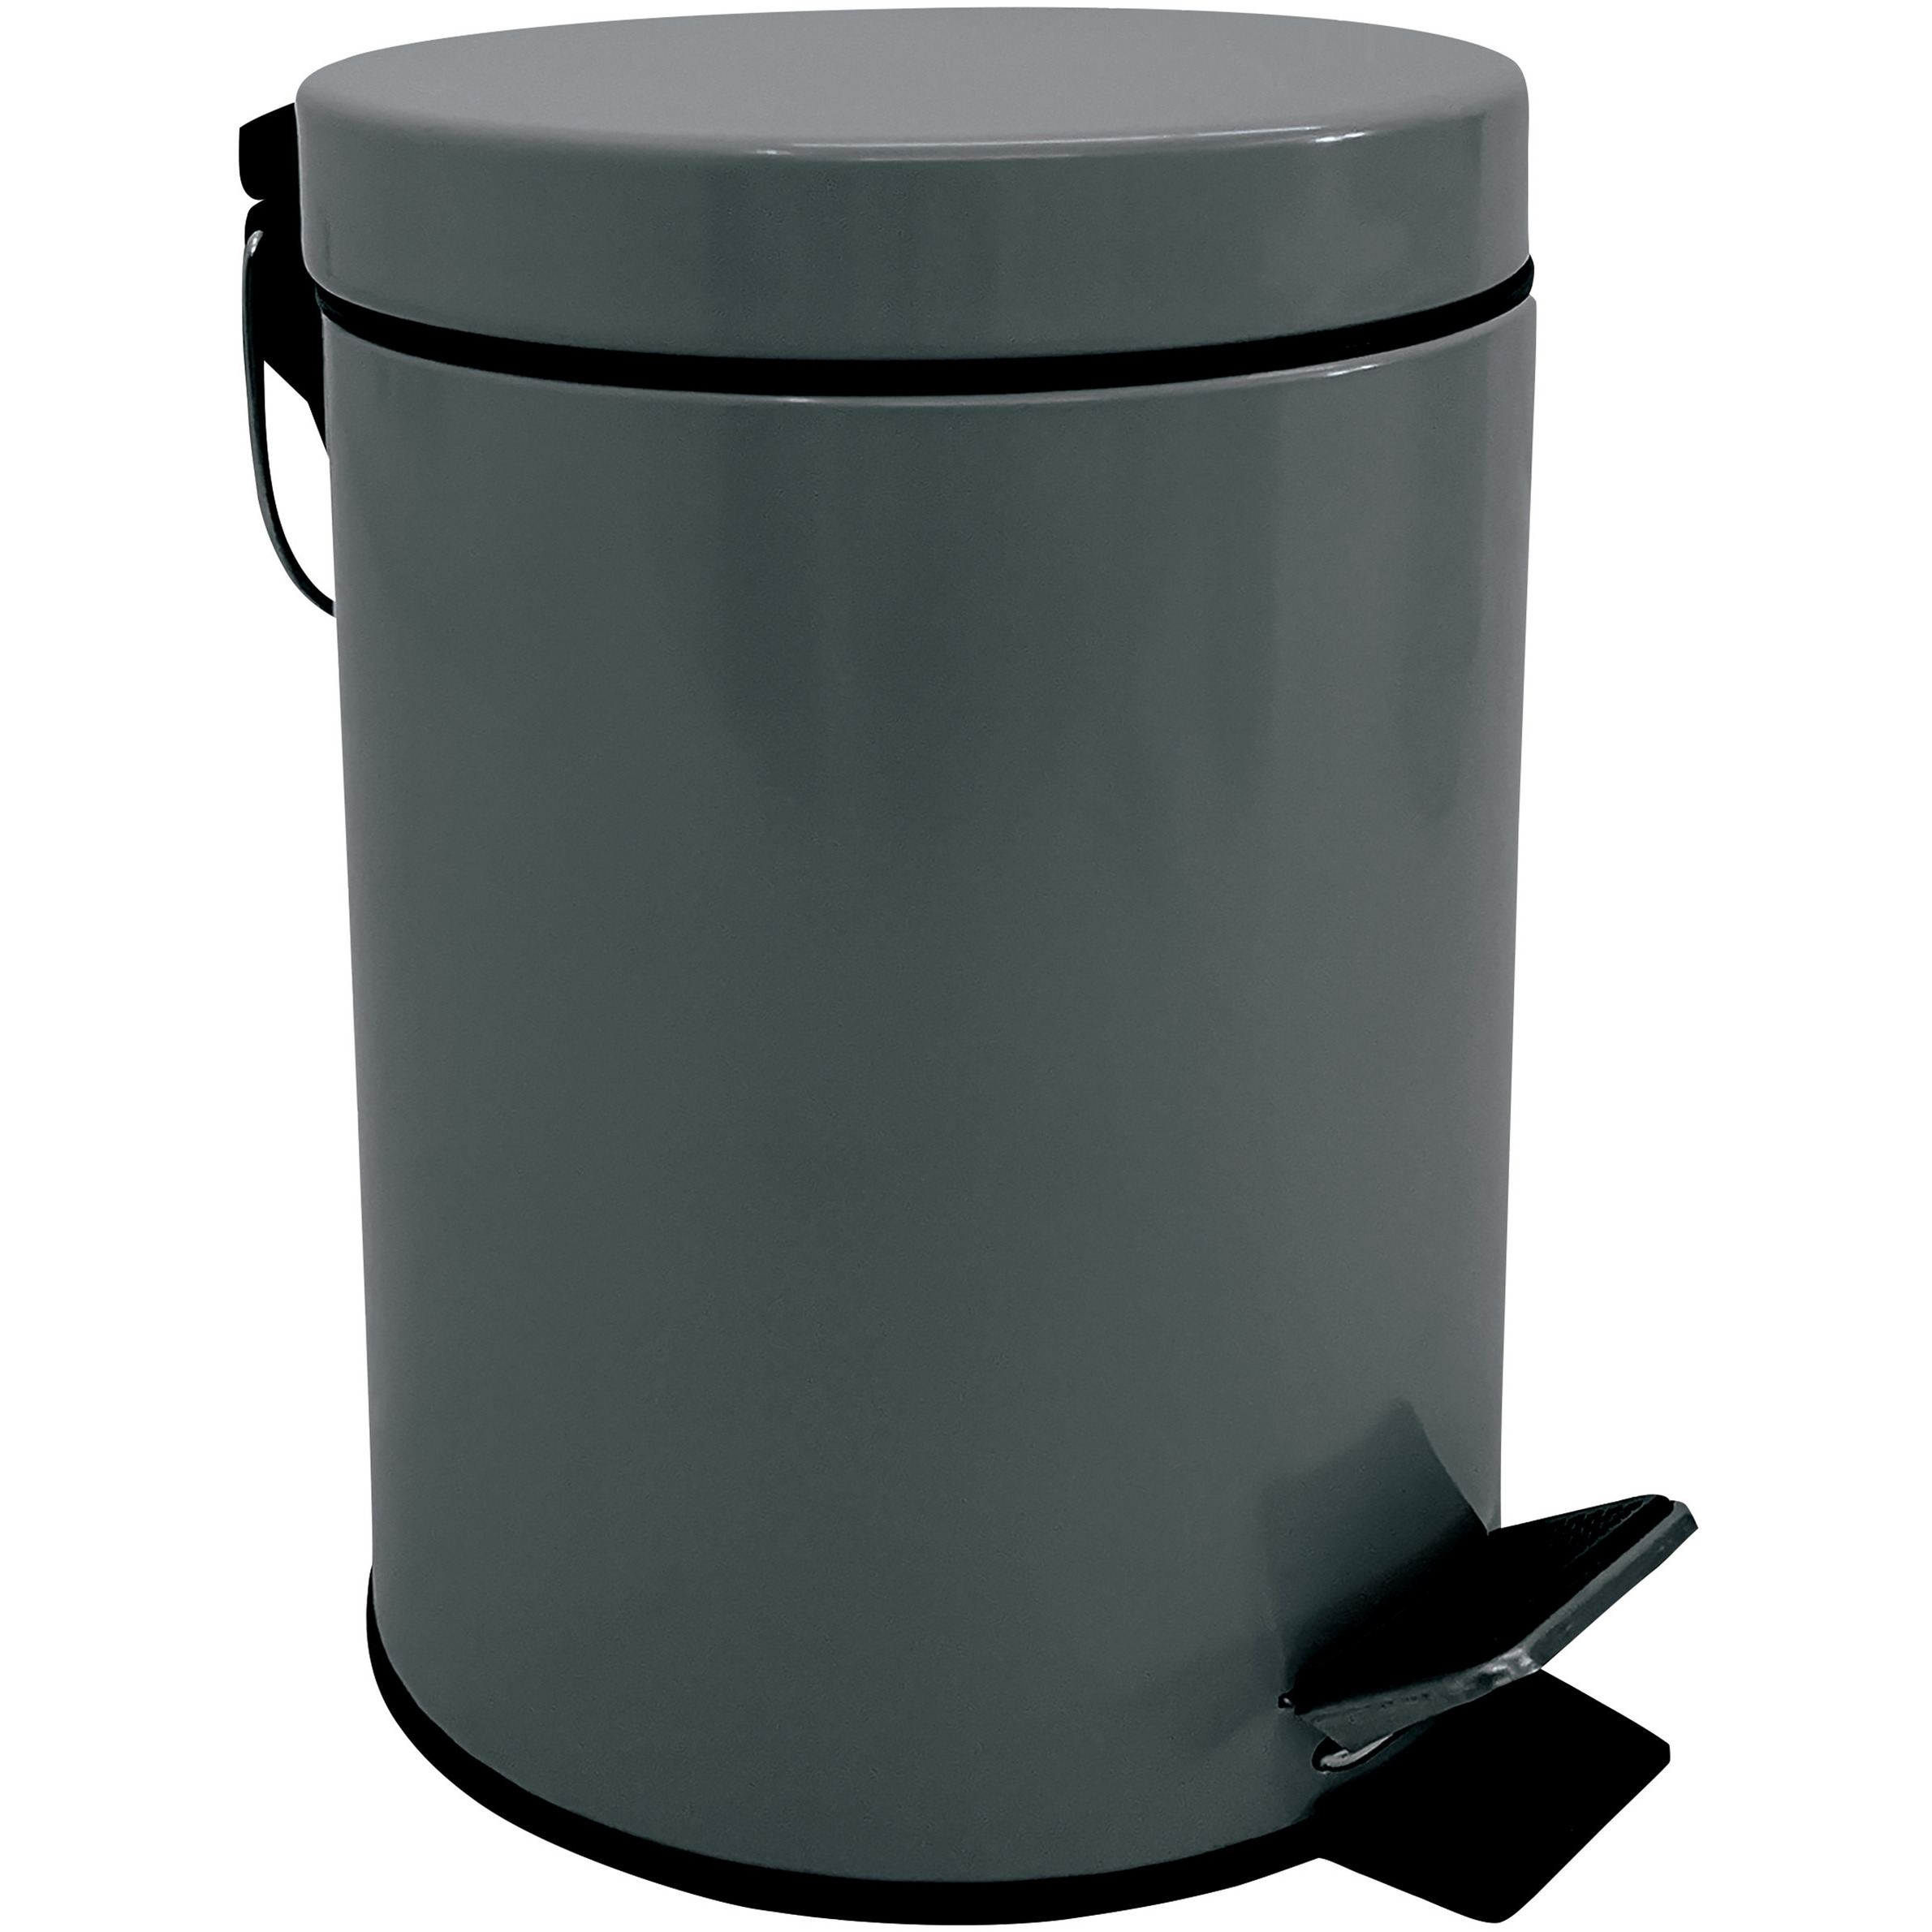 Prullenbak-pedaalemmer metaal donkergrijs 3 liter 17 x 25 cm Badkamer-toilet